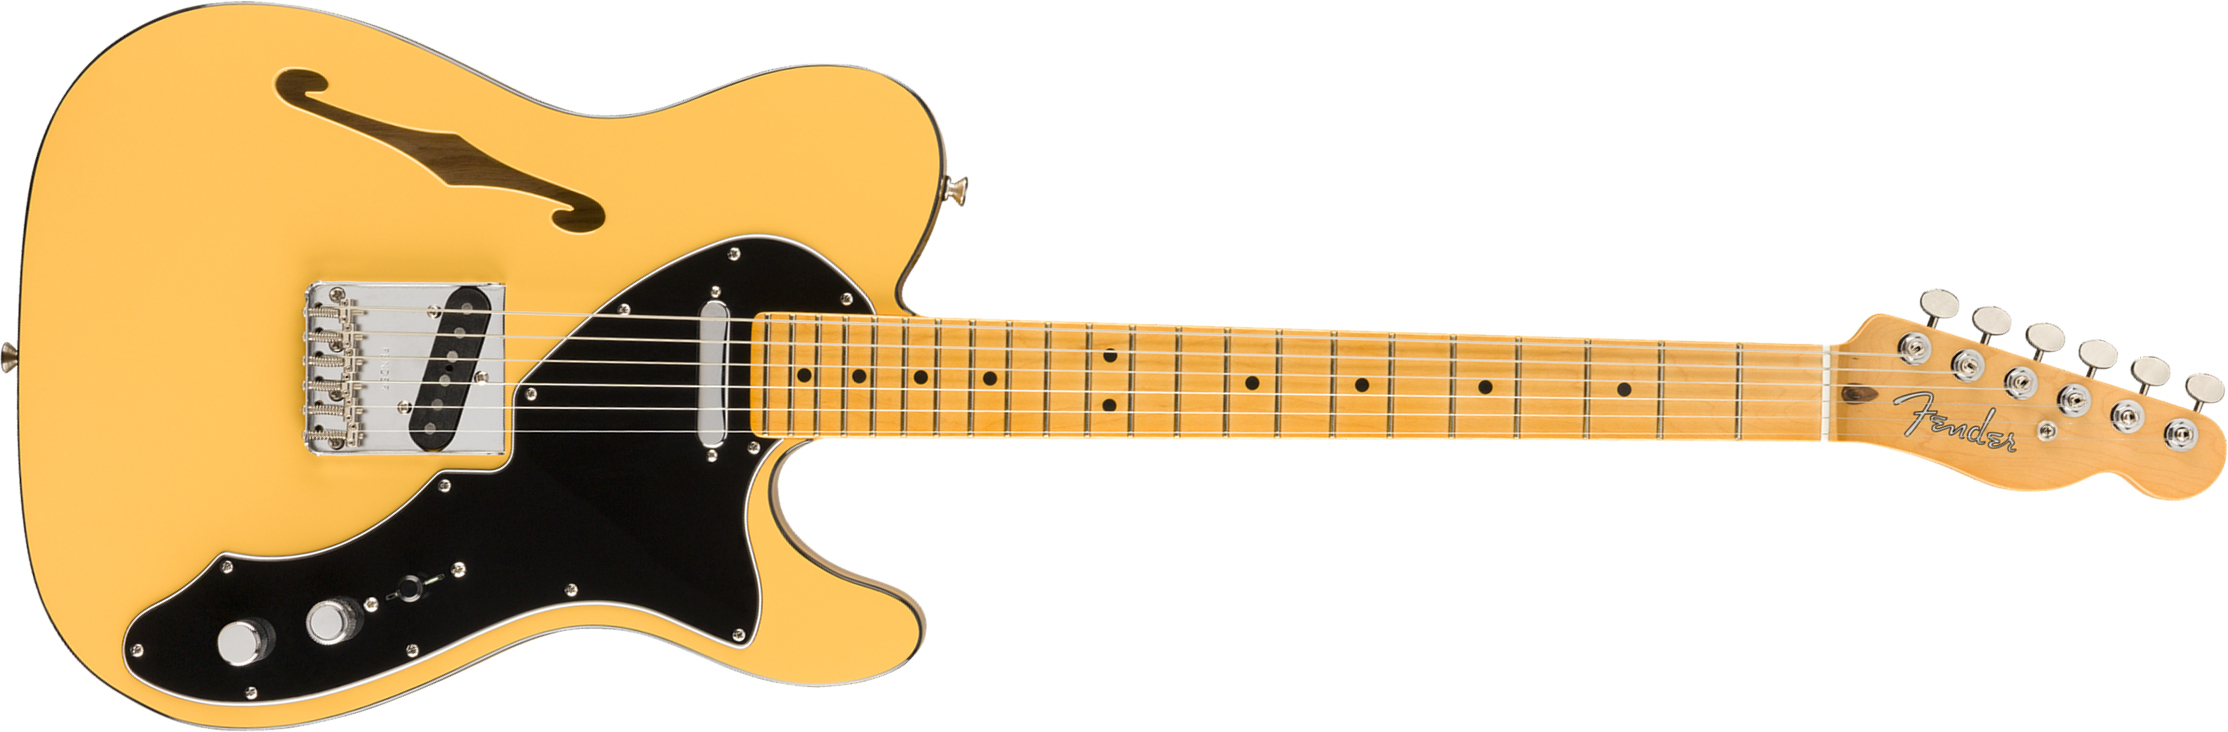 Fender Britt Daniel Tele Thinline Signature Ss Mn - Amarillo Gold - Semi-Hollow E-Gitarre - Main picture